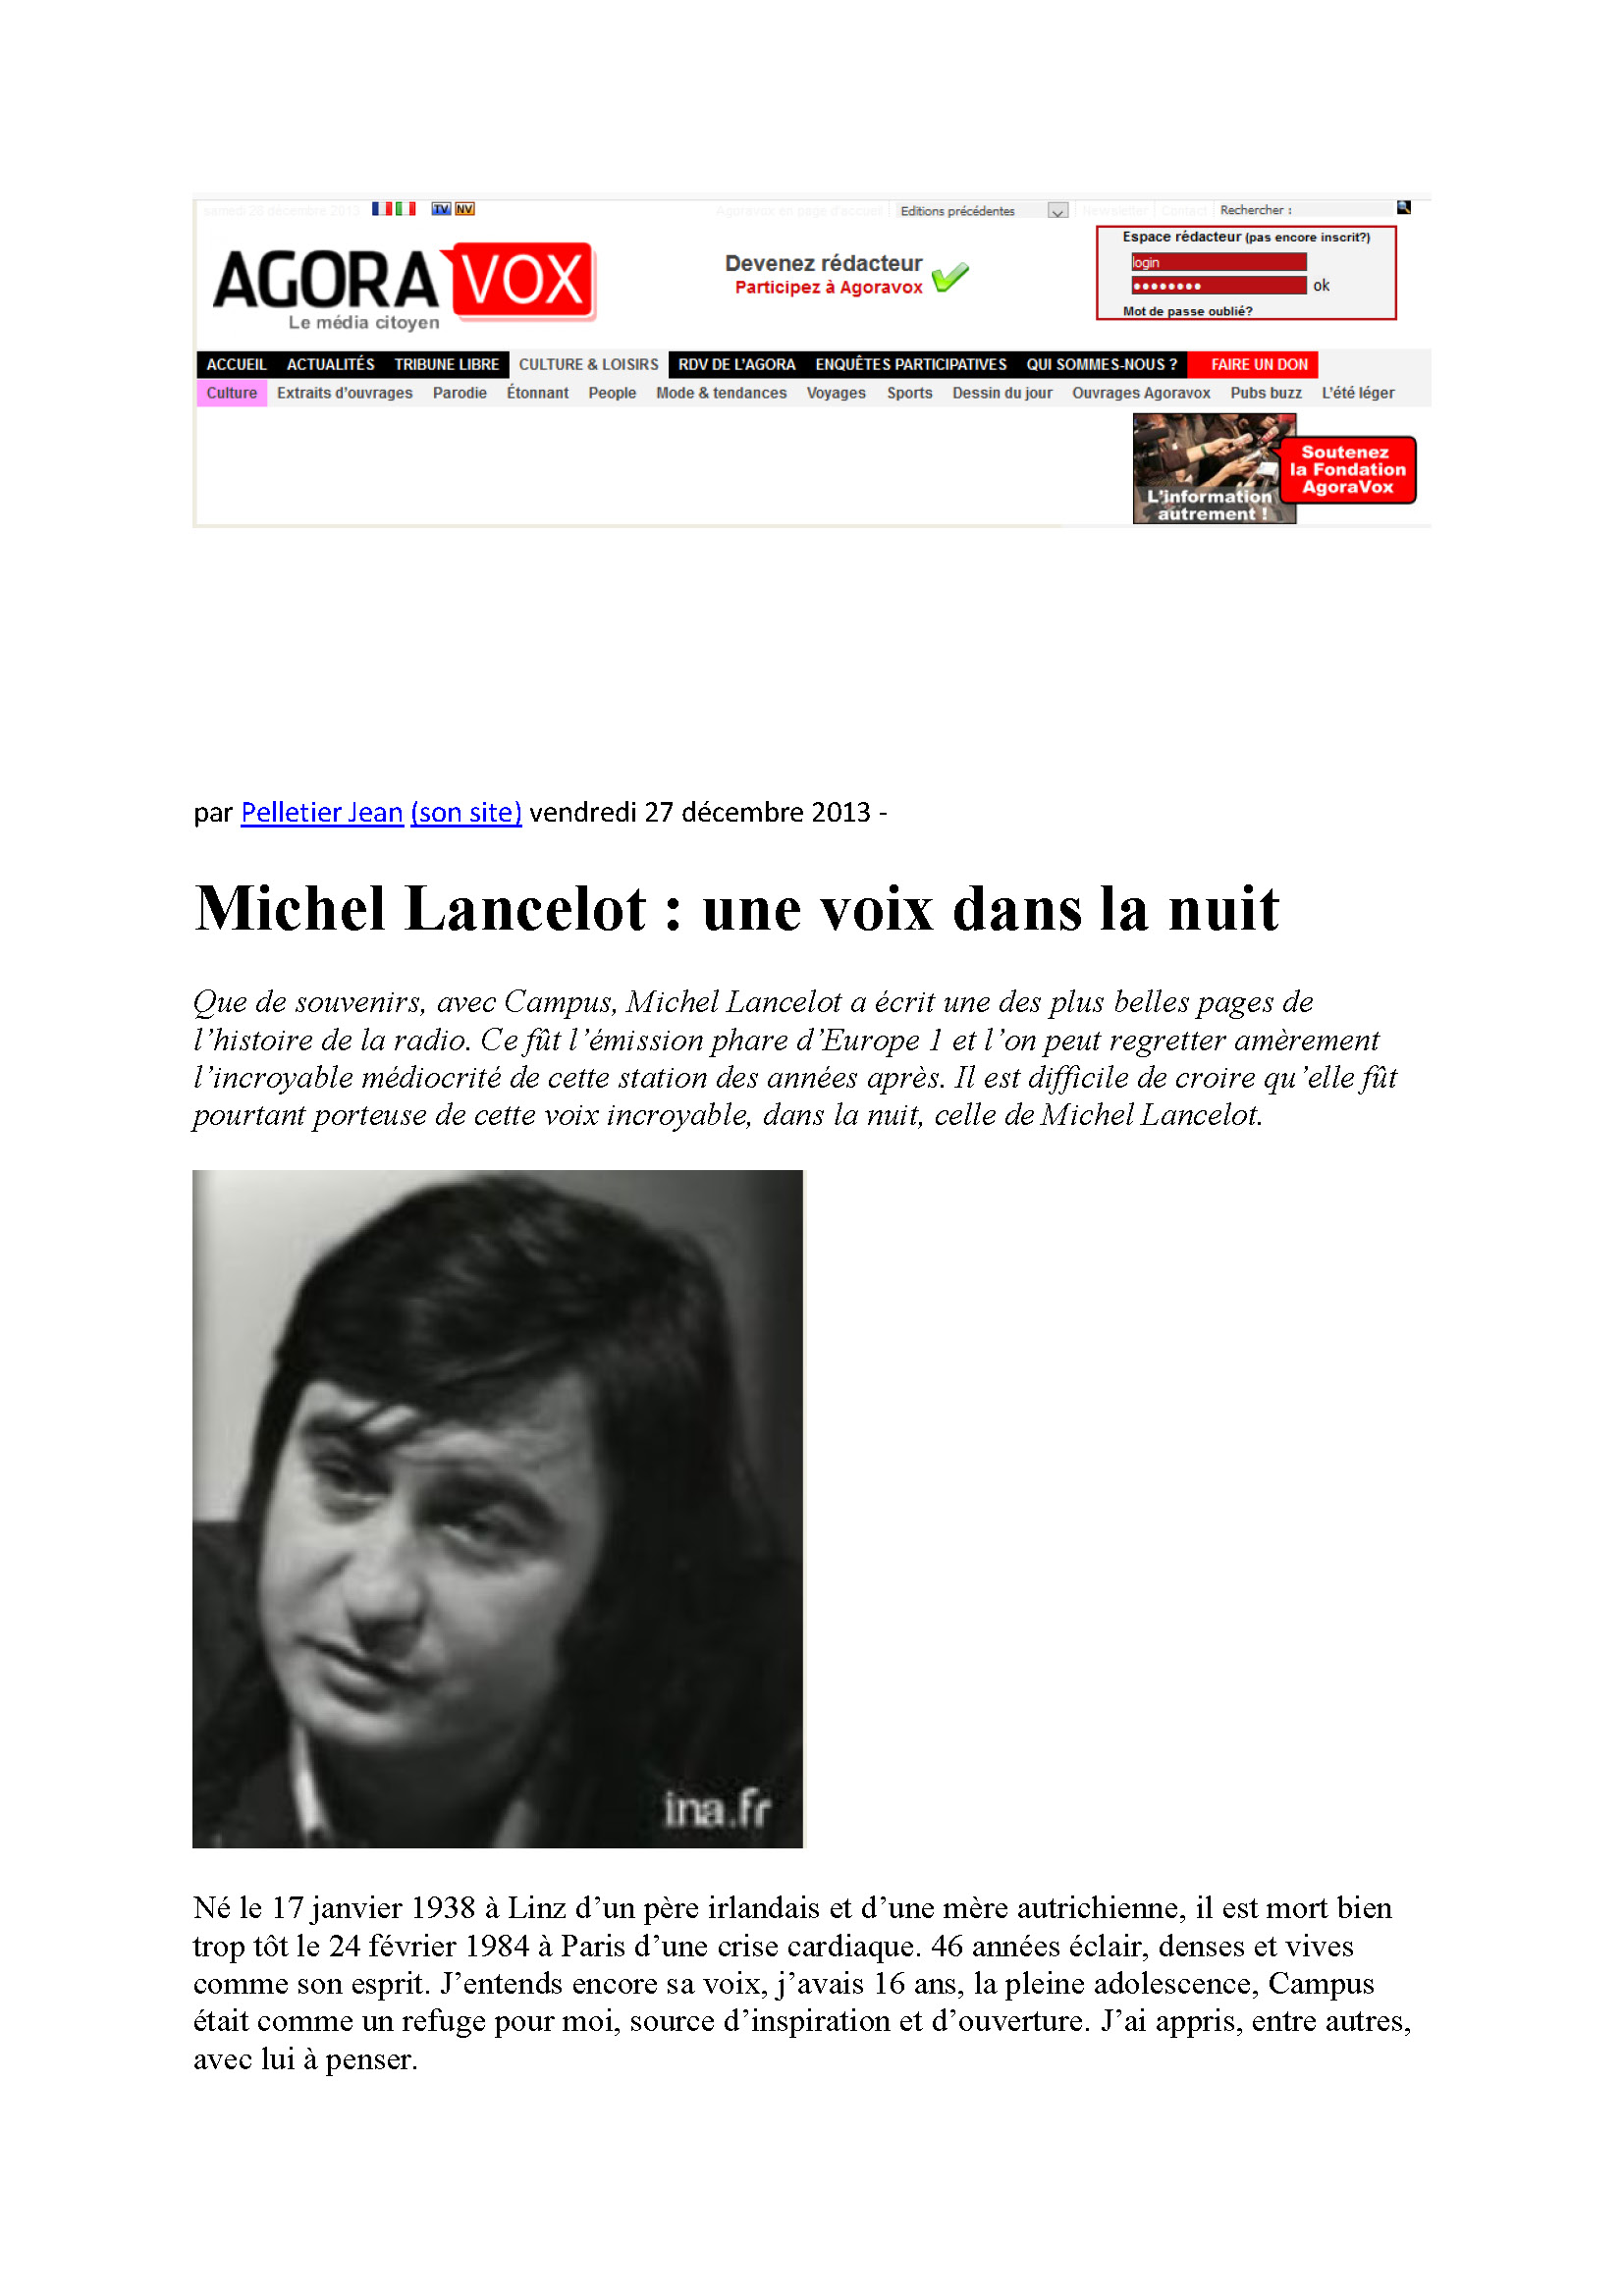  Agora Vox le 27/12/2013 Michel Lancelot